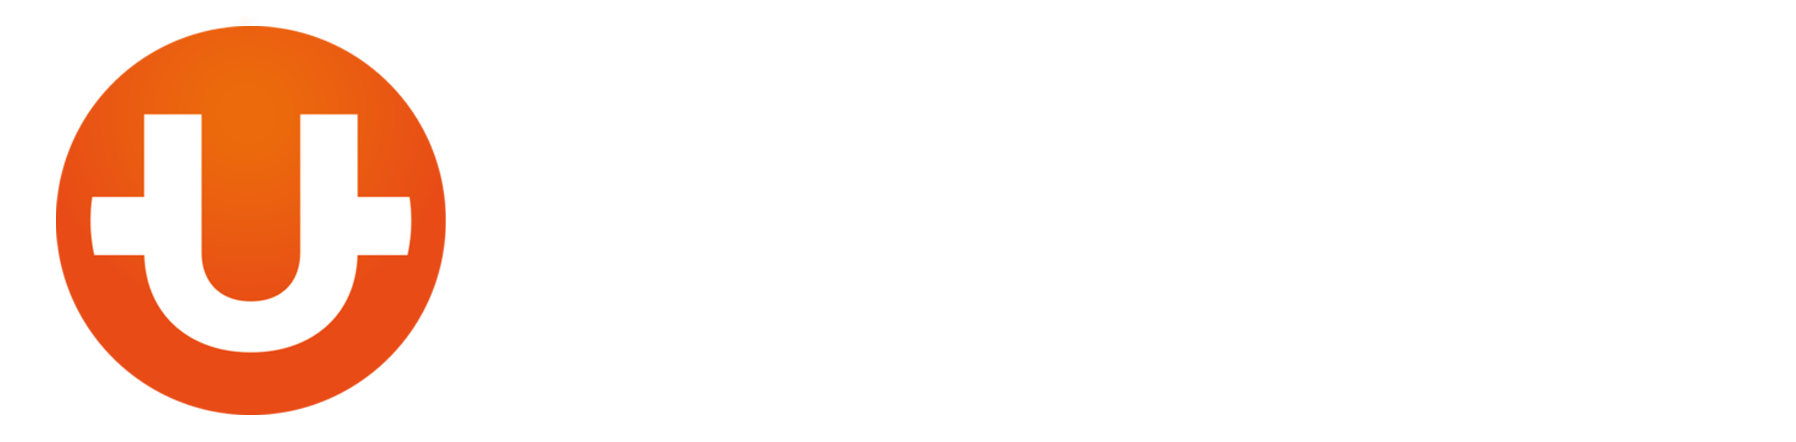 CUTcoin Staking Pool logo